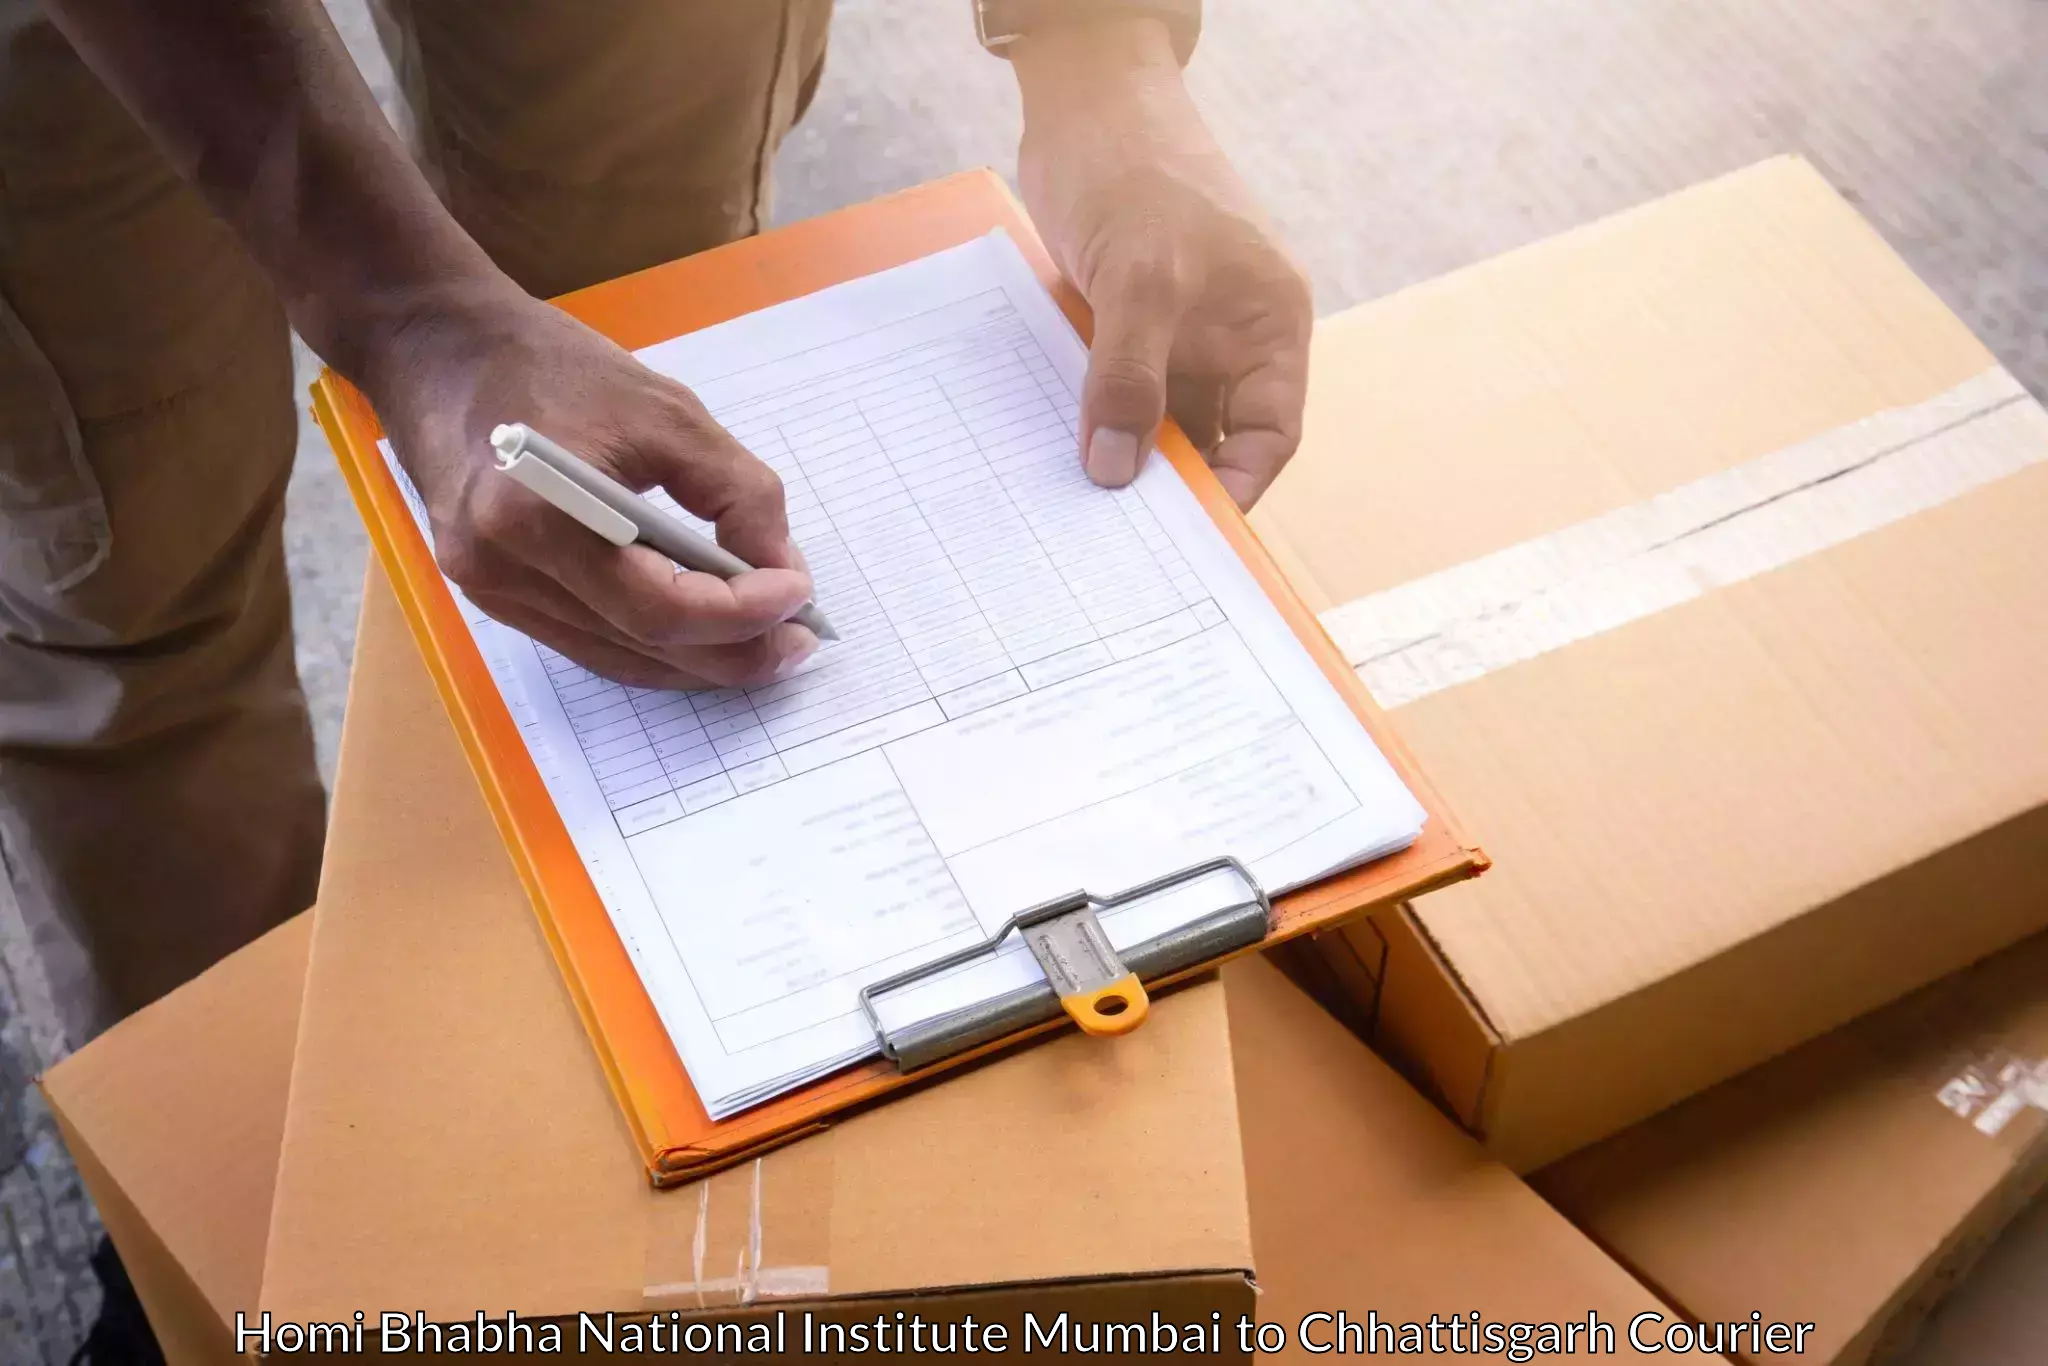 Professional courier handling in Homi Bhabha National Institute Mumbai to Dharamjaigarh